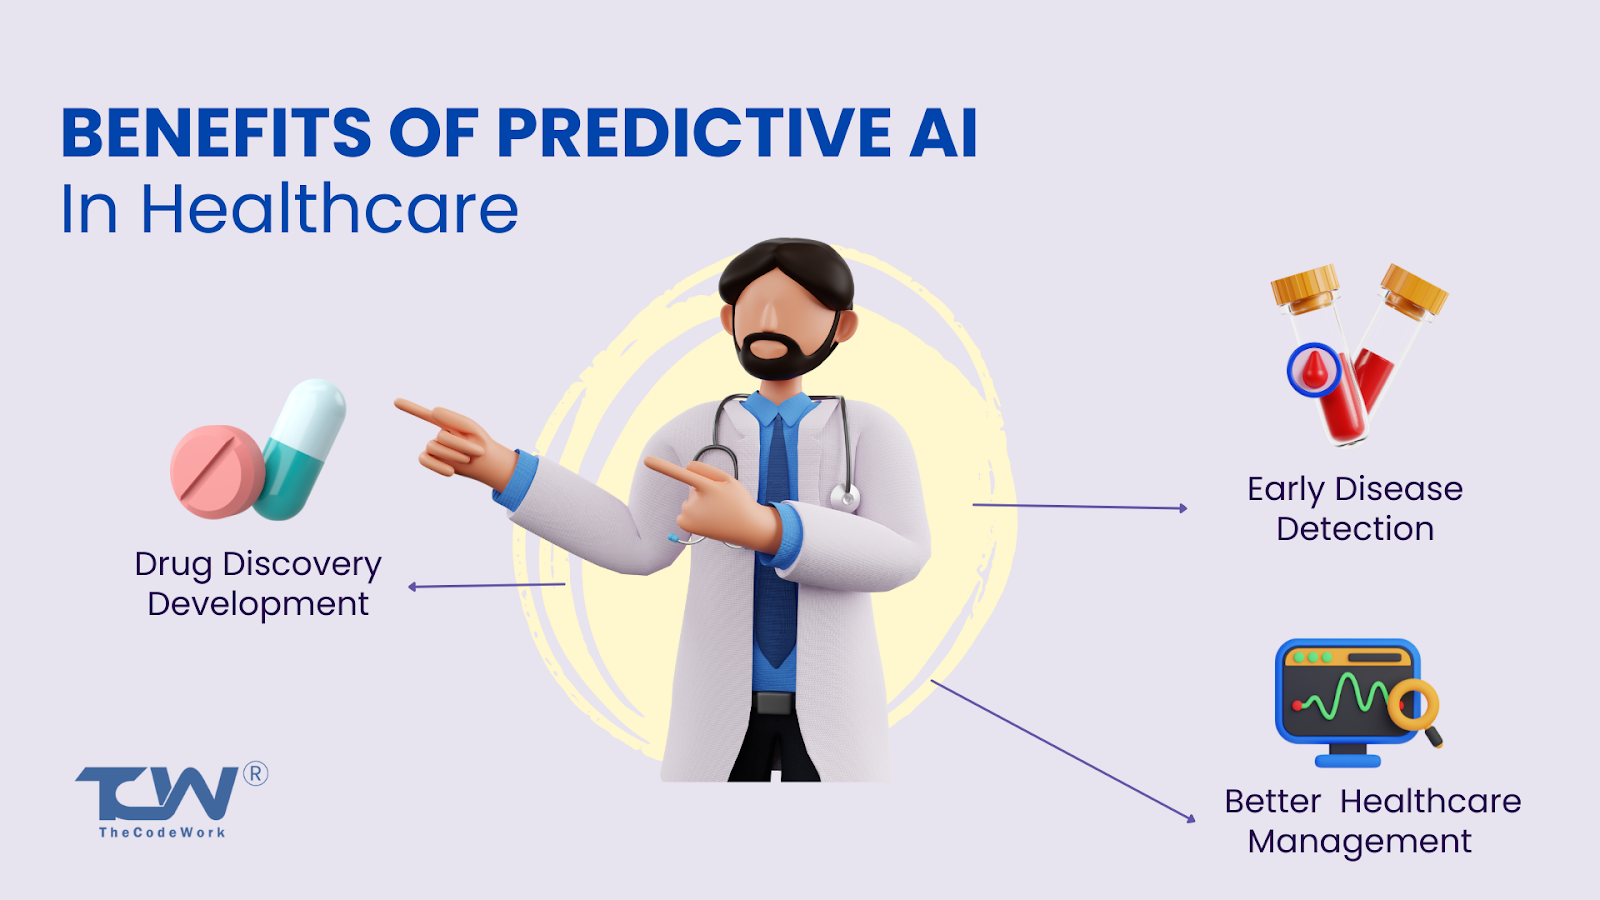 Predictive AI in healthcare